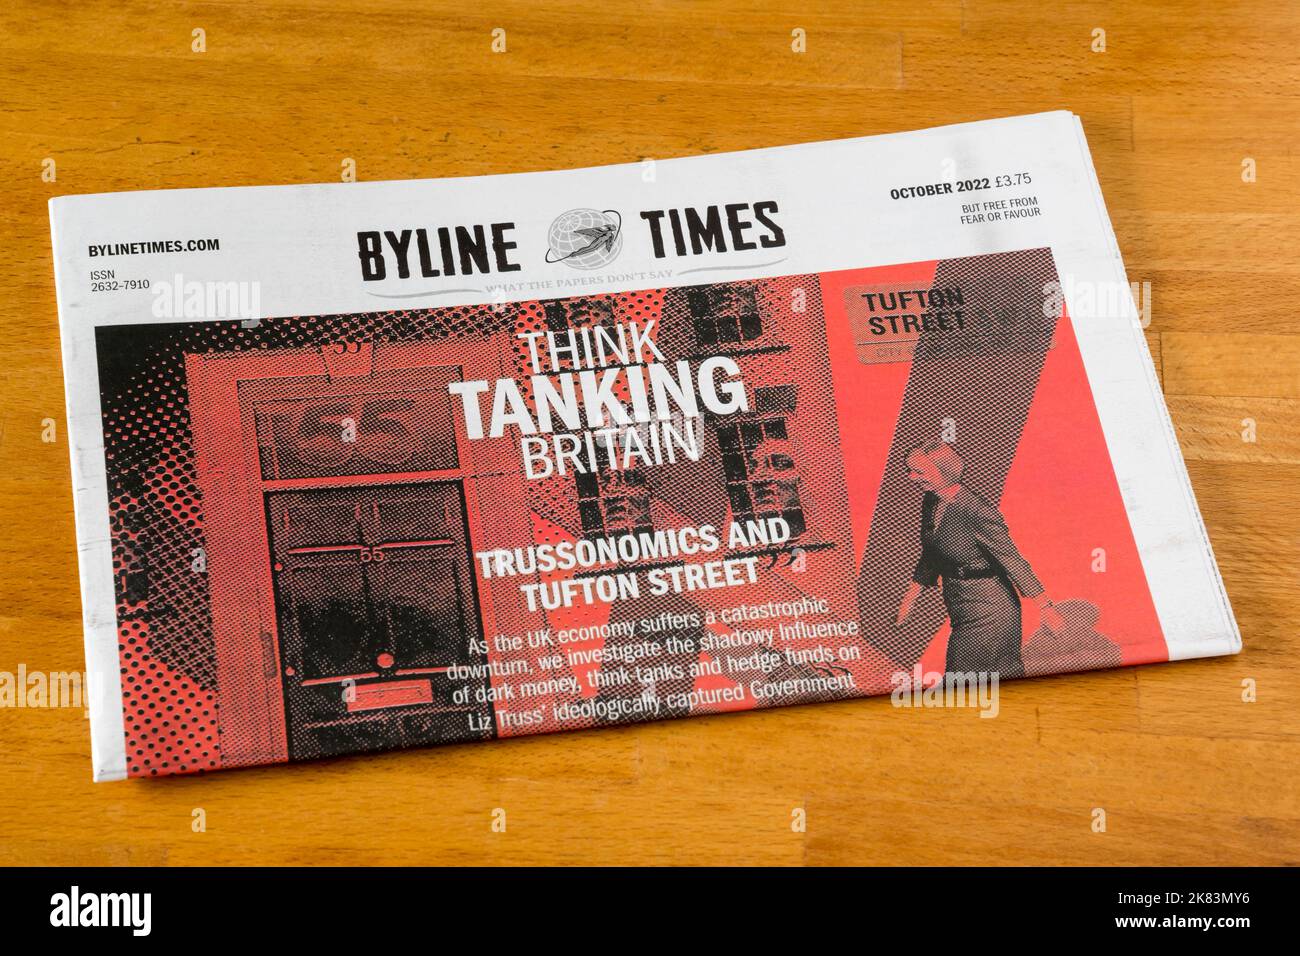 Die Ausgabe der Byline Times vom 2022. Oktober hat die Schlagzeile Think Tanking Britain veröffentlicht, die die Verbindung zwischen Trussonomics & Think Tanks & die Auswirkungen auf die britische Wirtschaft untersucht. Stockfoto